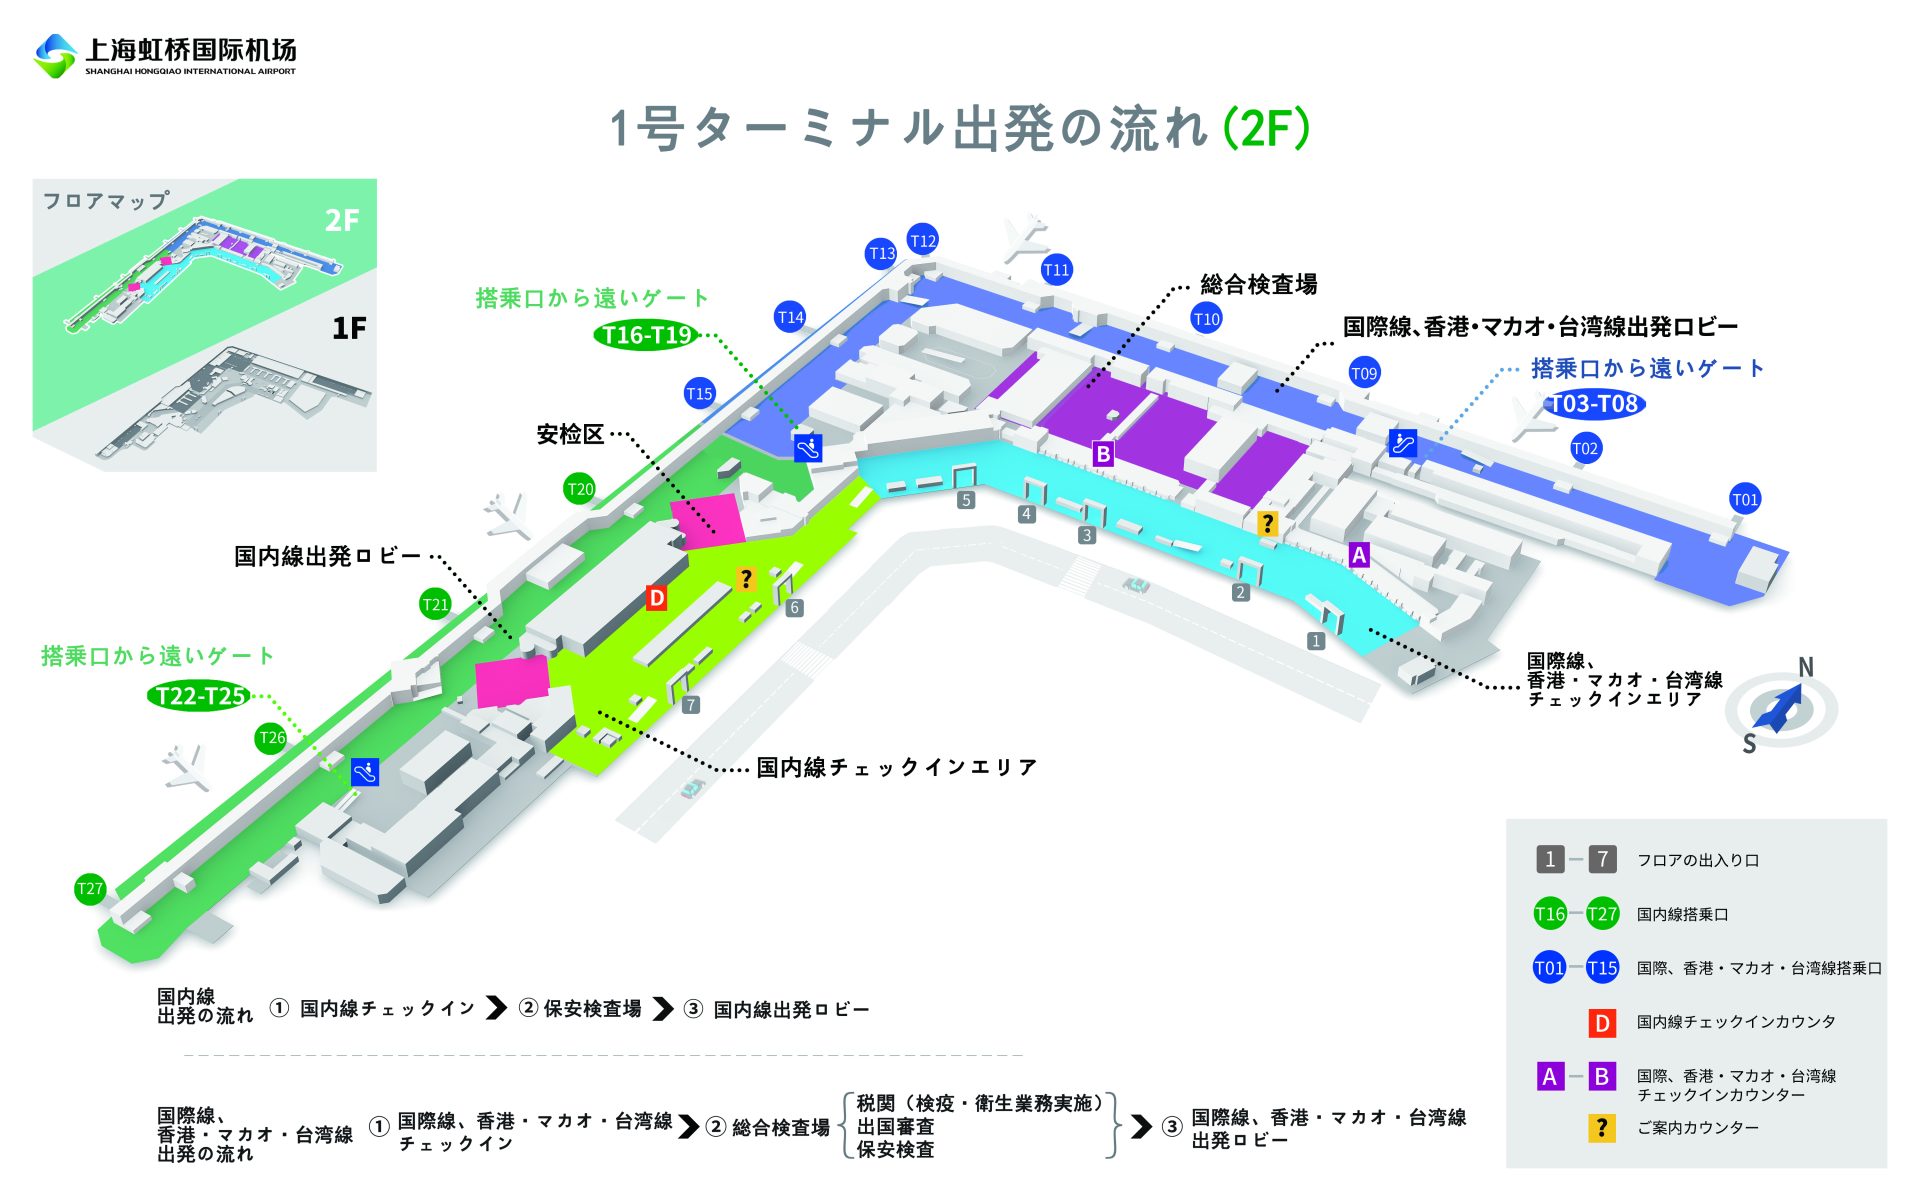 虹橋空港第一ターミナル(2階)